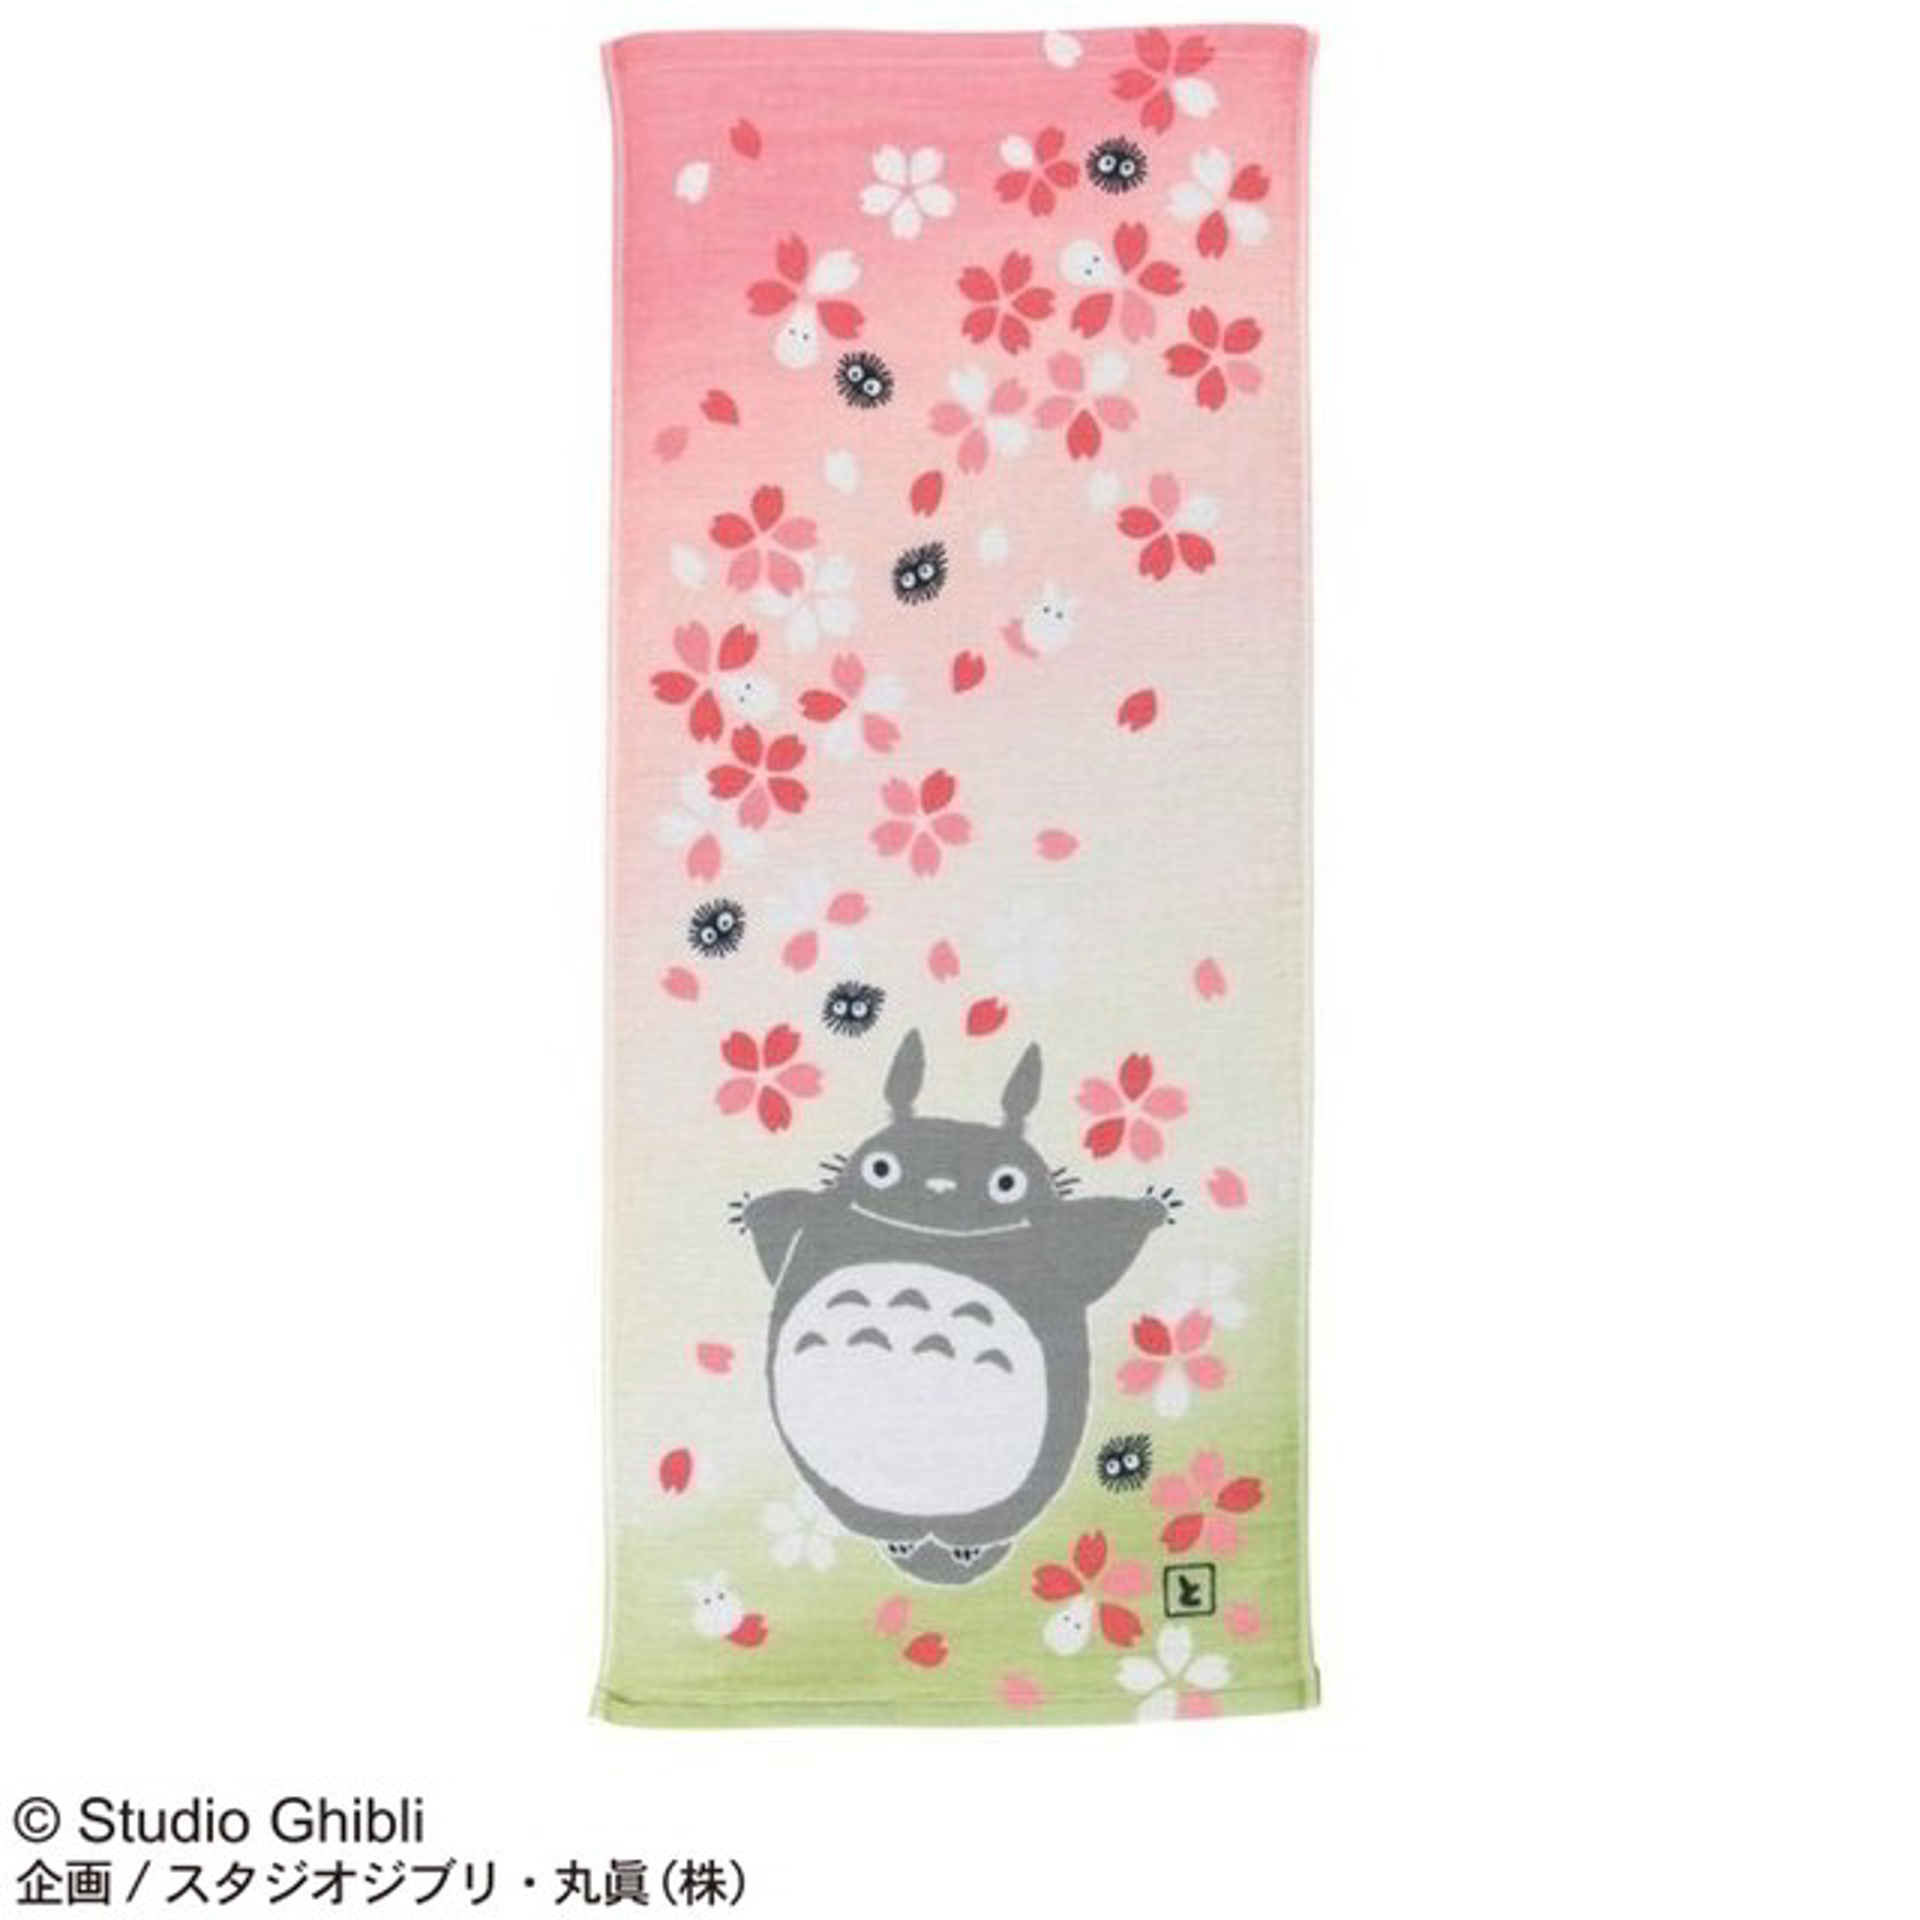 Ghibli - Mon voisin Totoro - Serviette La chute des fleurs de cerisier 34x80cm